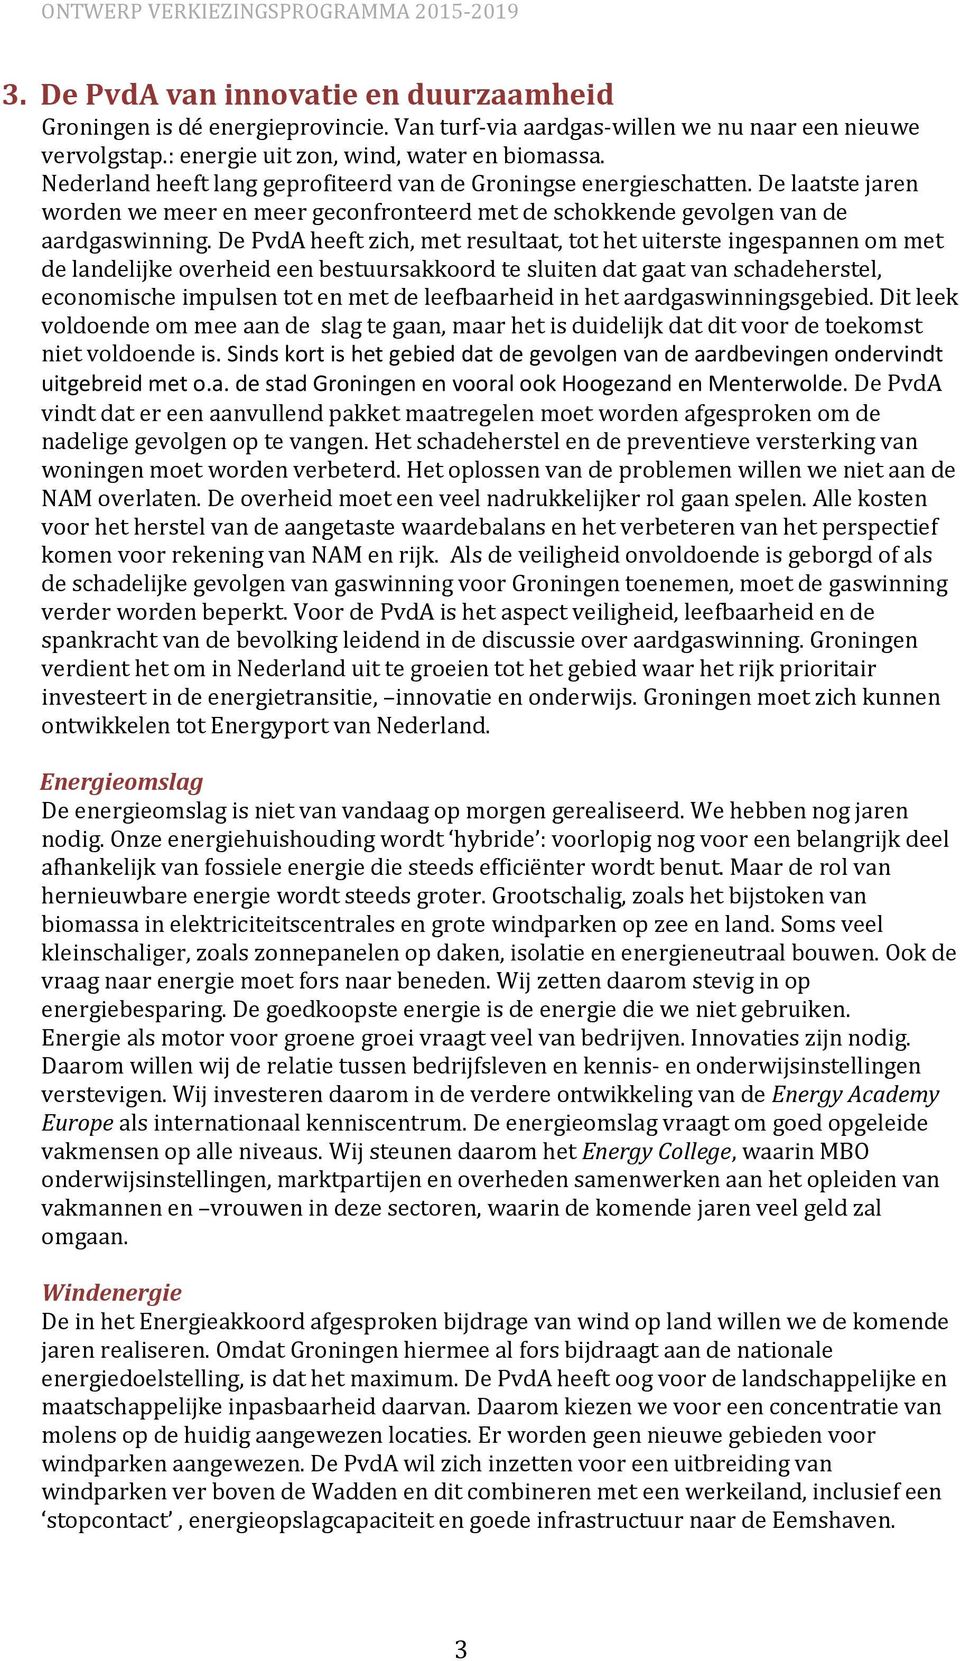 De PvdA heeft zich, met resultaat, tot het uiterste ingespannen om met de landelijke overheid een bestuursakkoord te sluiten dat gaat van schadeherstel, economische impulsen tot en met de